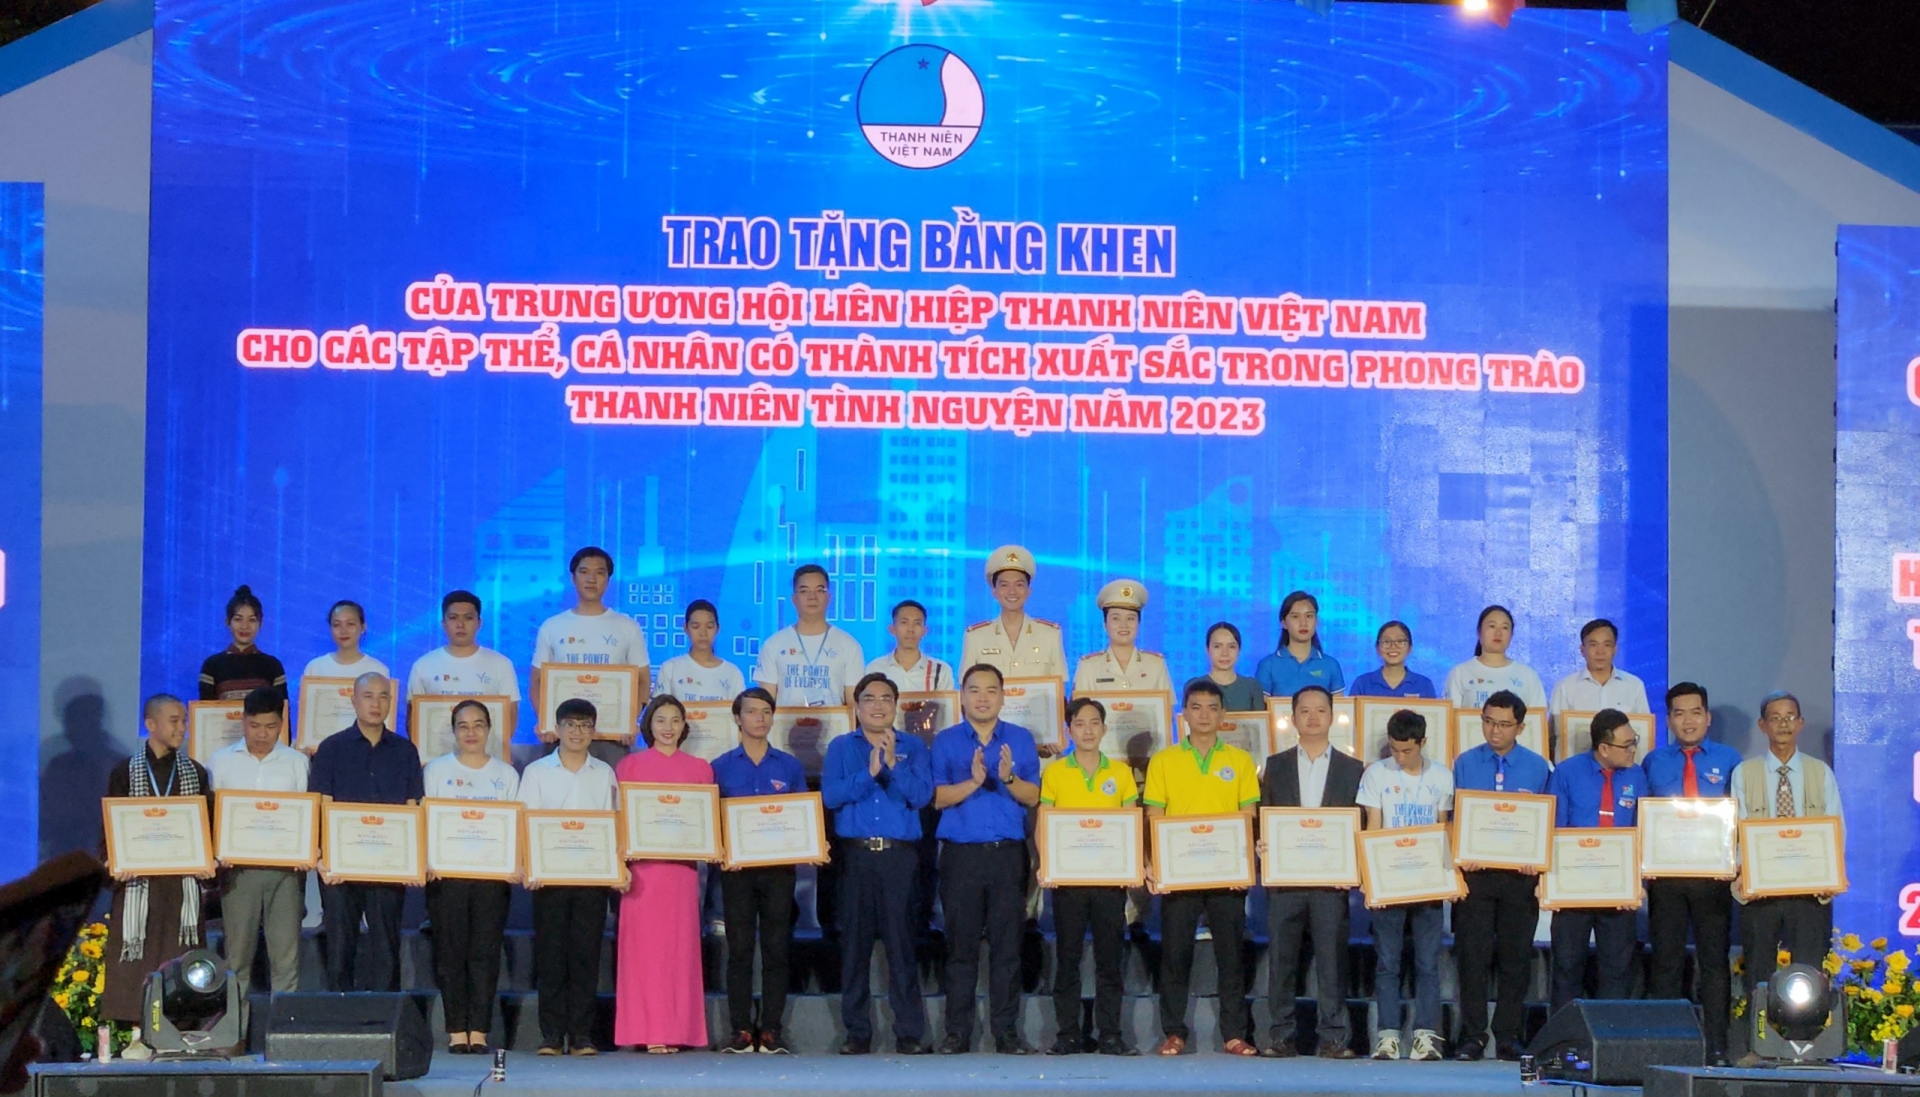 Lâm Đồng có 4 tập thể, cá nhân có thành tích xuất sắc trong hoạt động tình nguyện vì cộng đồng năm 2023